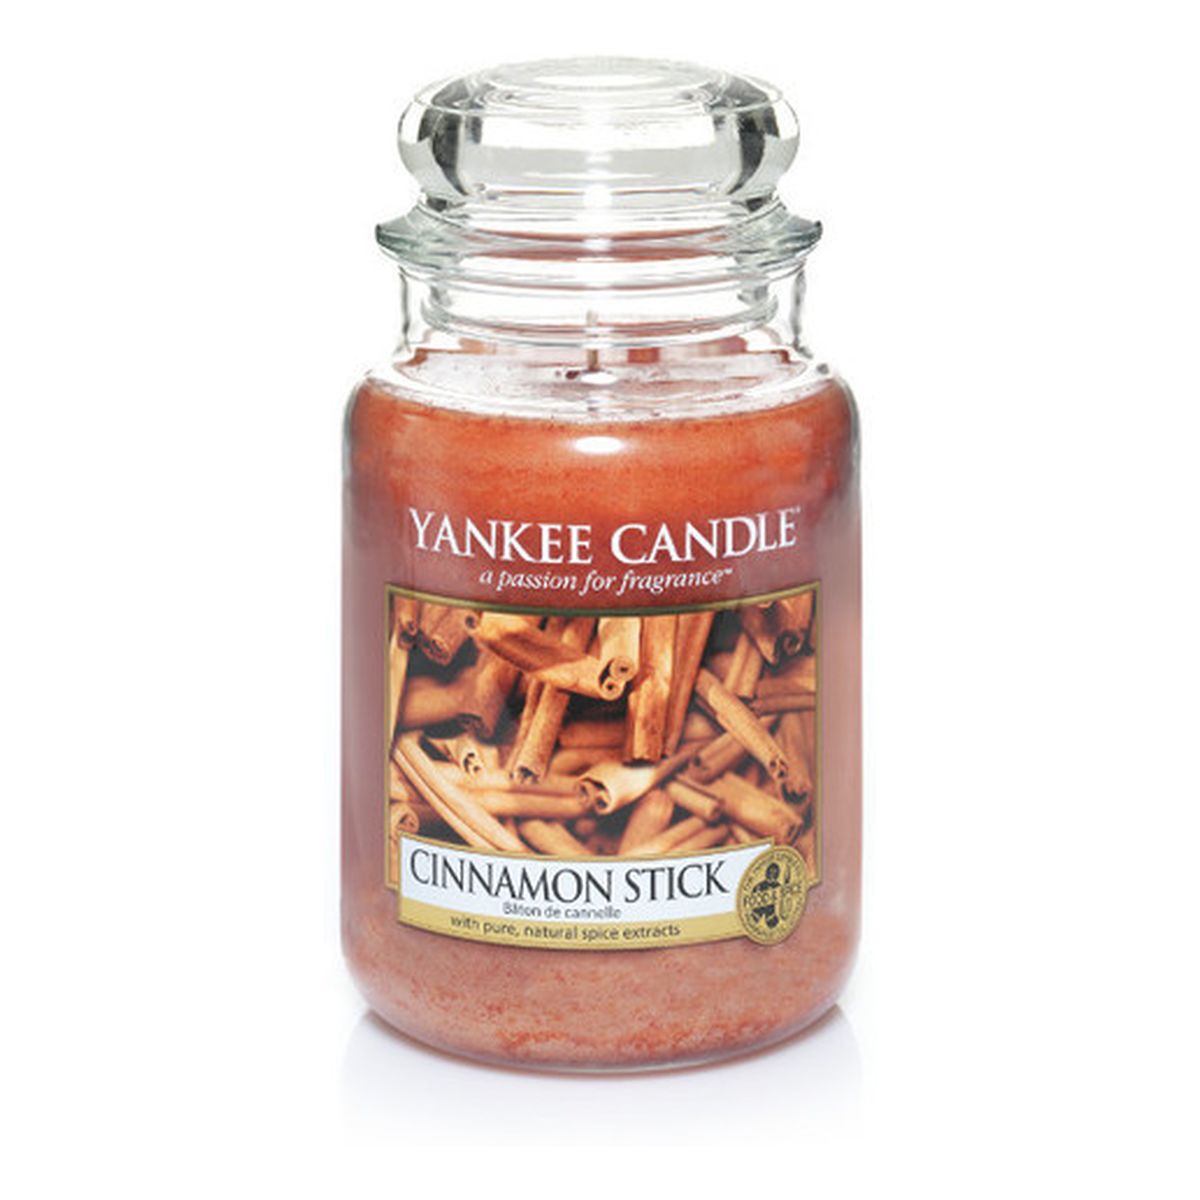 Yankee Candle Large Jar duża świeczka zapachowa Cinamon Stick 623g